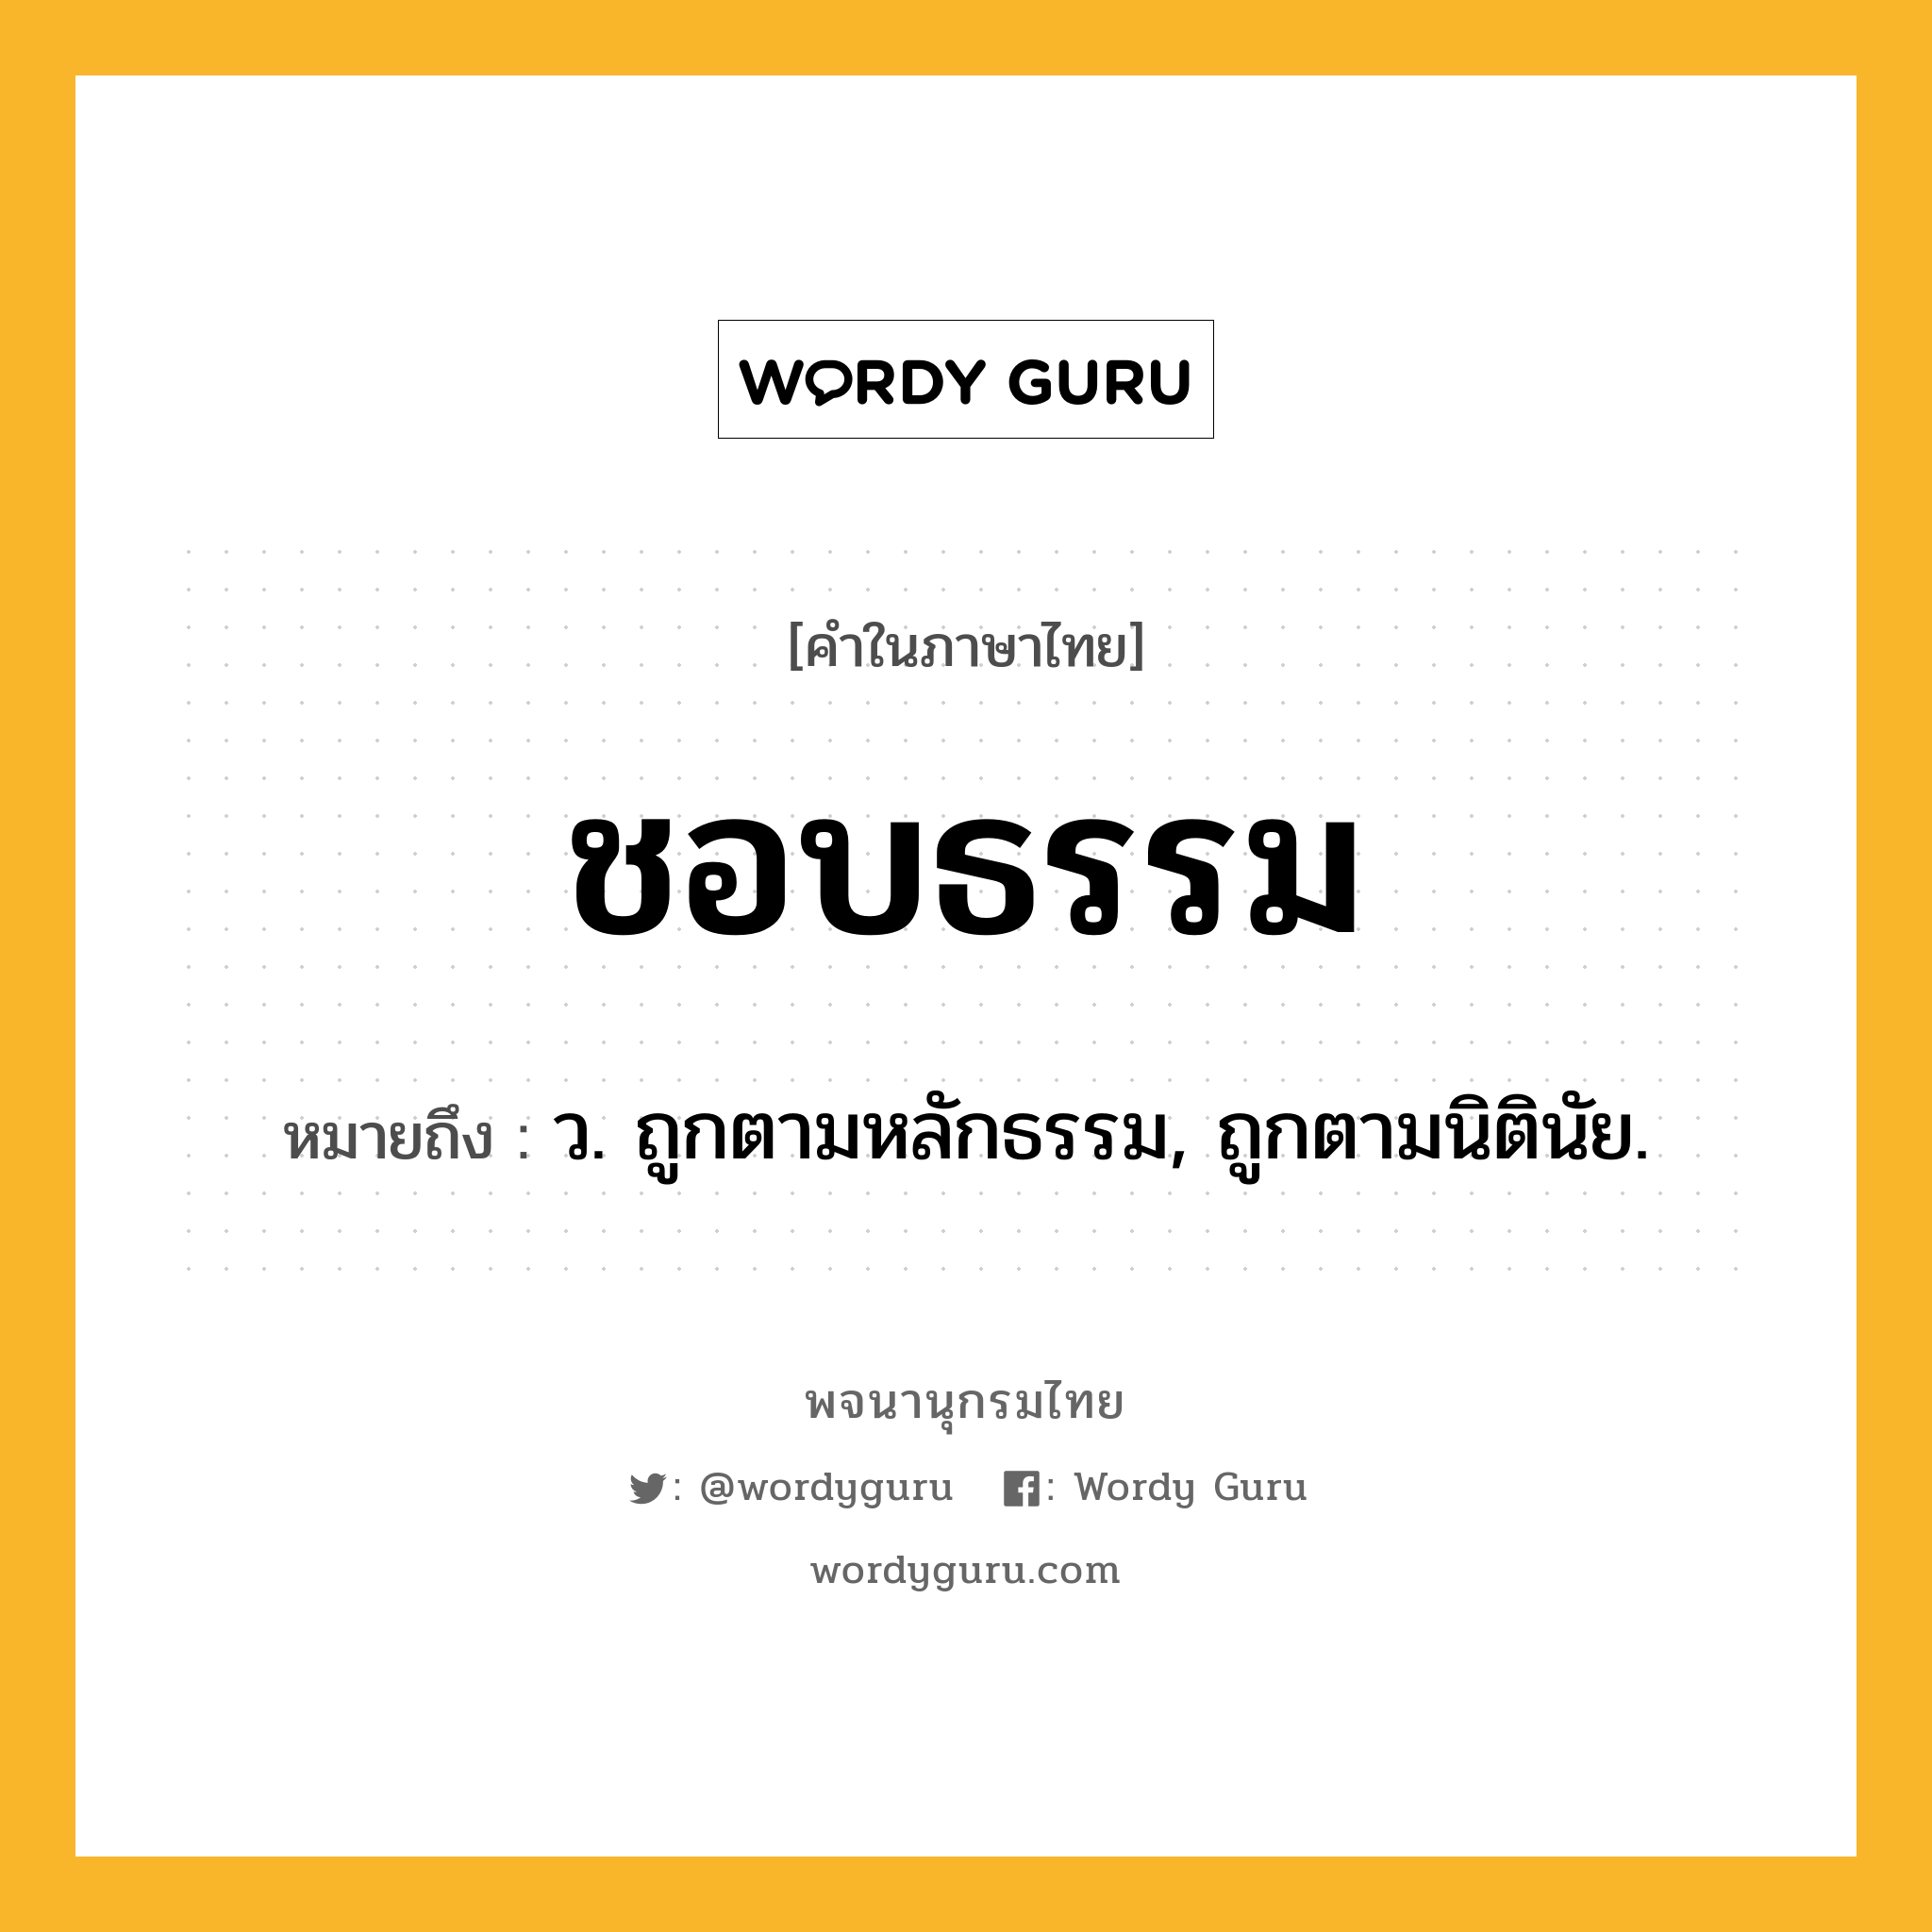 ชอบธรรม ความหมาย หมายถึงอะไร?, คำในภาษาไทย ชอบธรรม หมายถึง ว. ถูกตามหลักธรรม, ถูกตามนิตินัย.